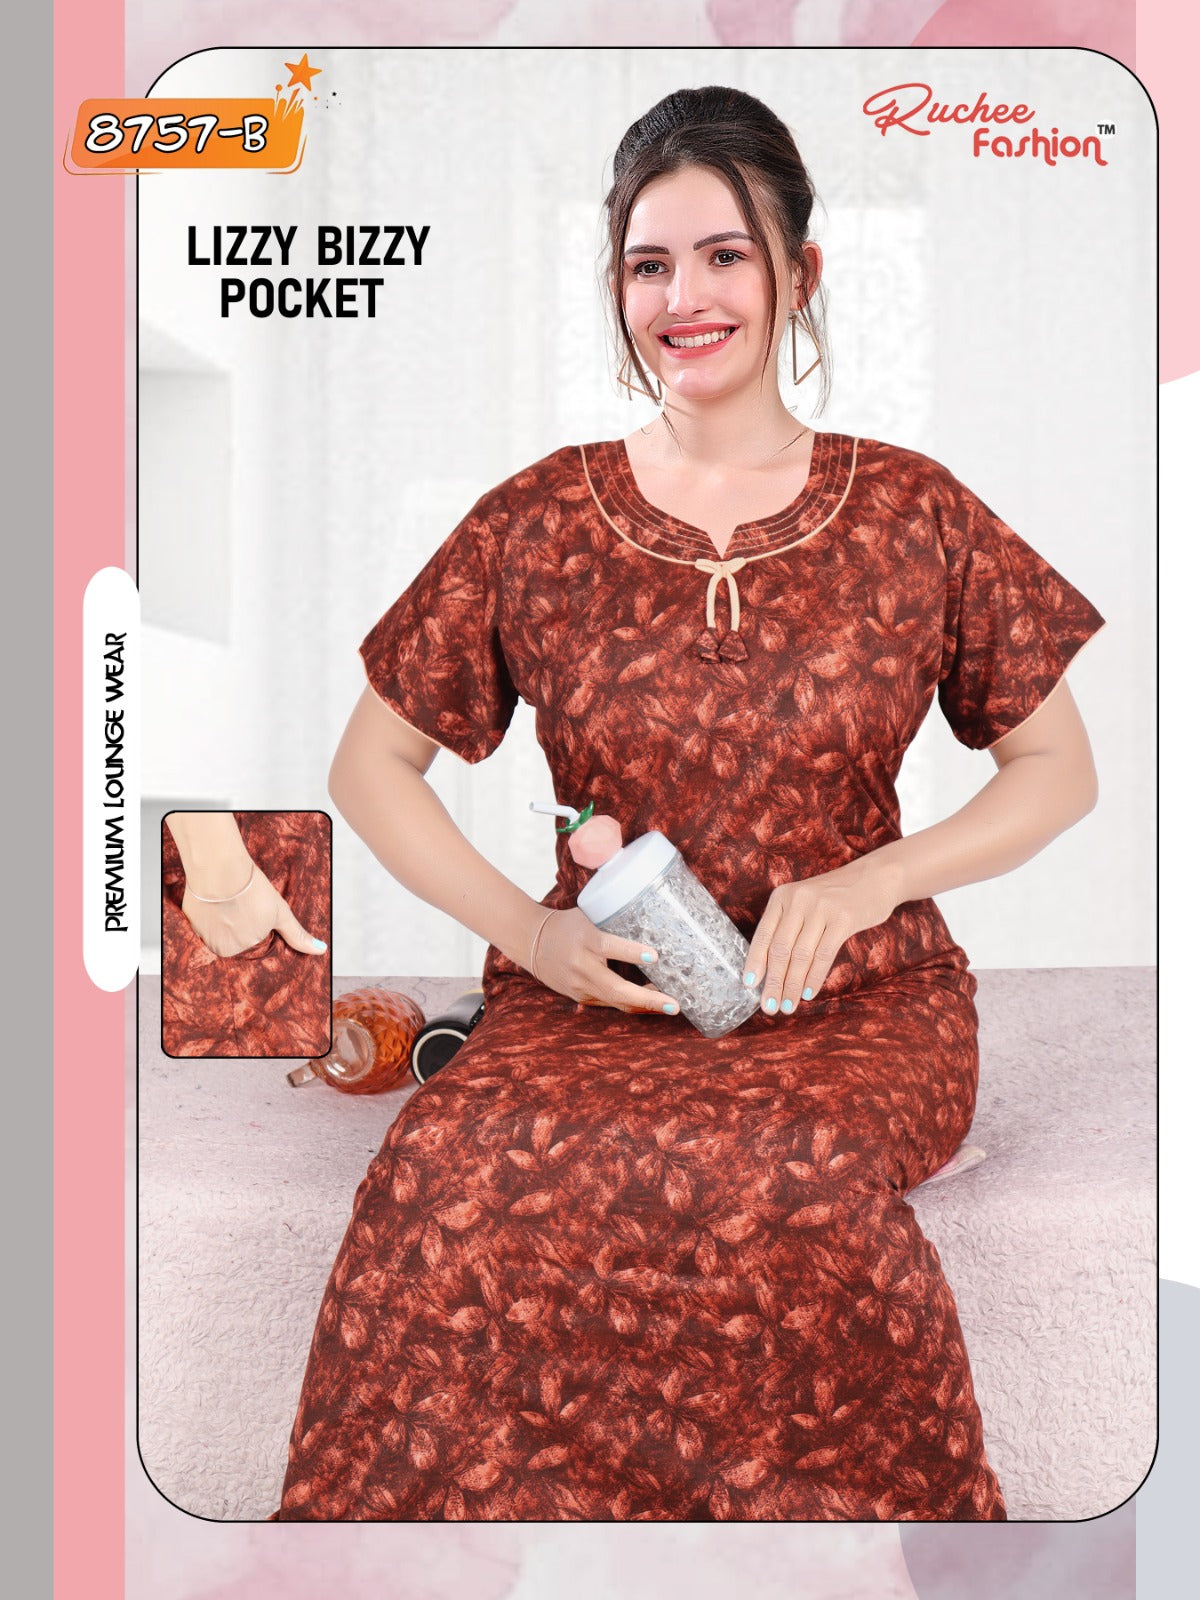 Lizzy Bizzy 150324 Ruchee Fashion Lizzy Bizzy Night Gowns